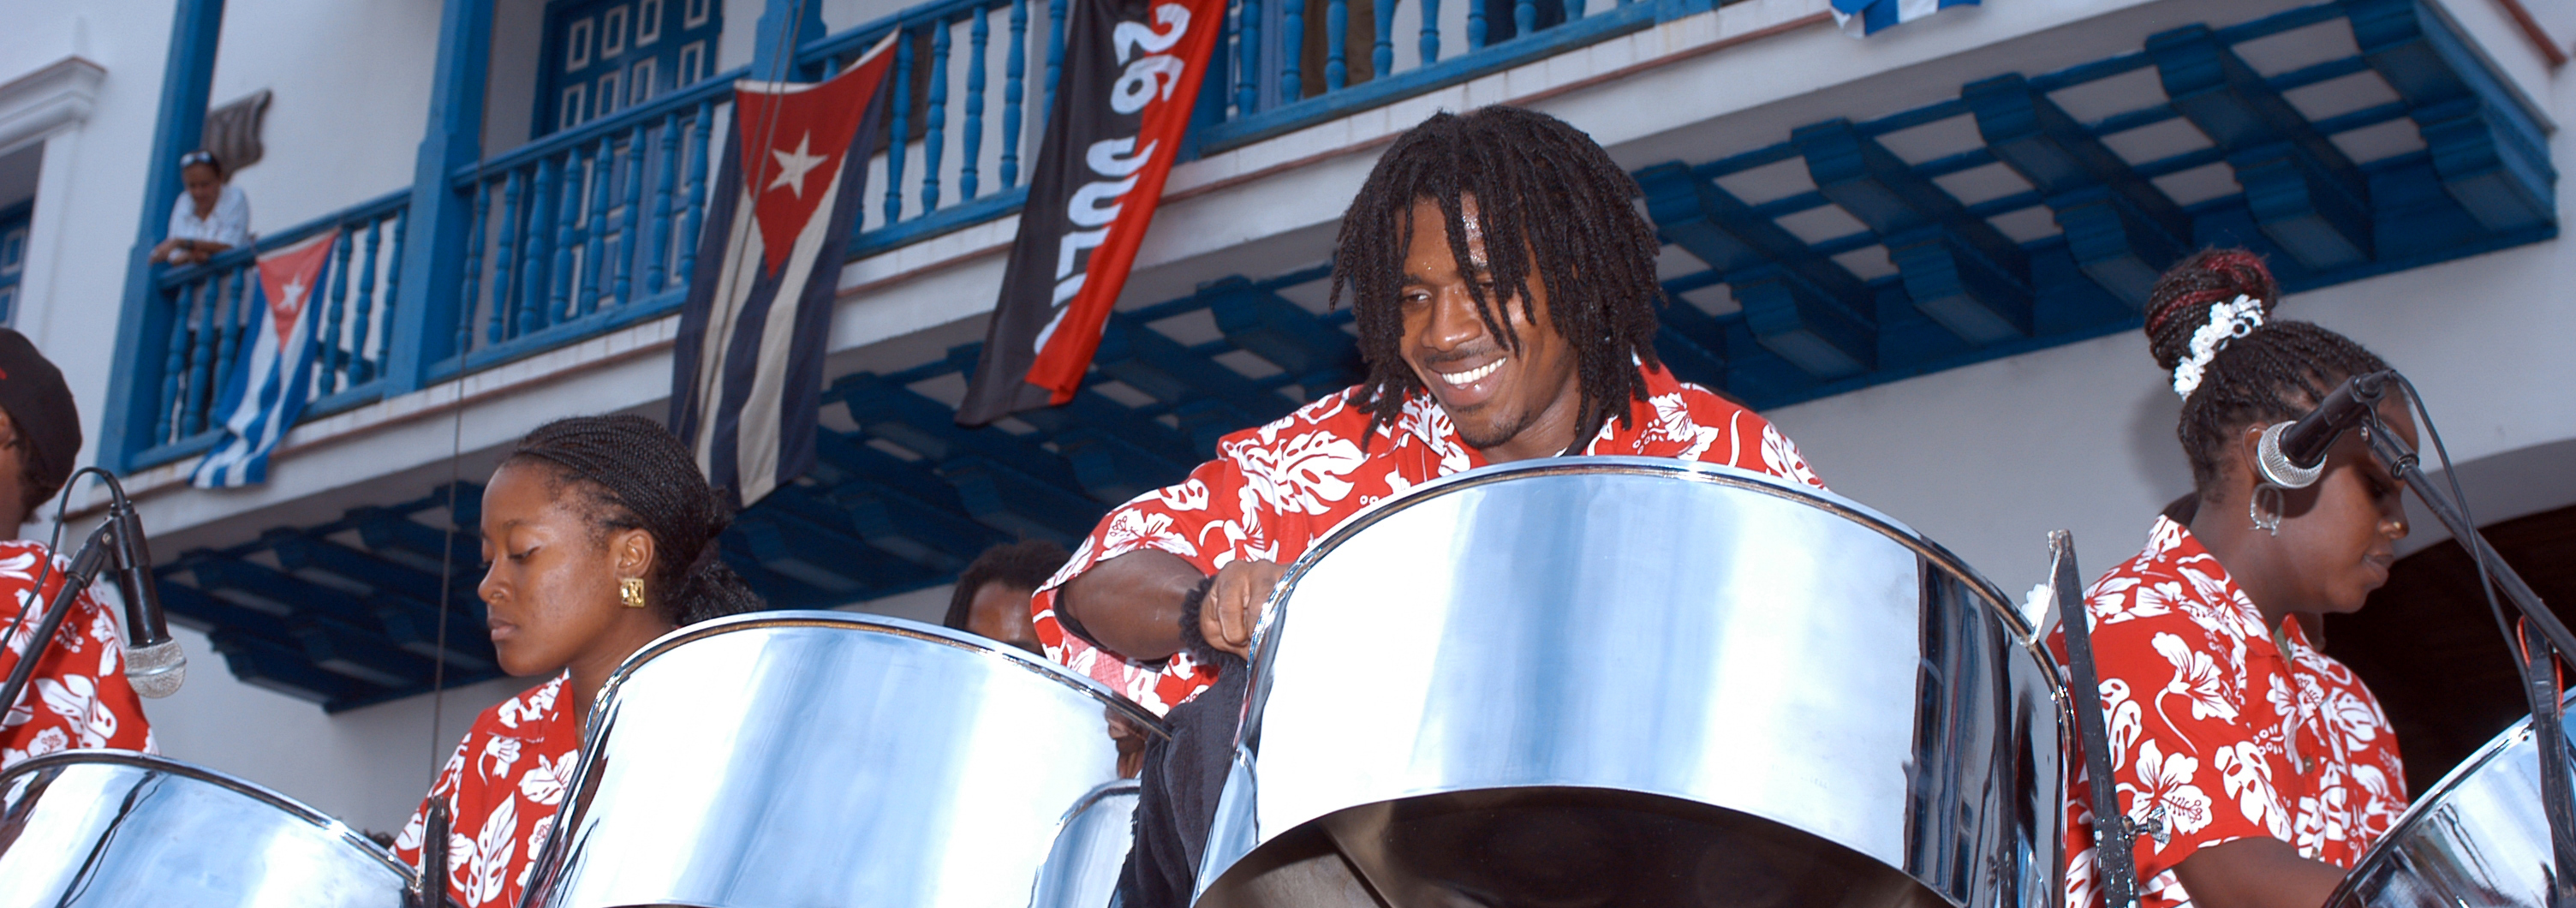 Straßenmusiker mit Steelpans auf Cuba